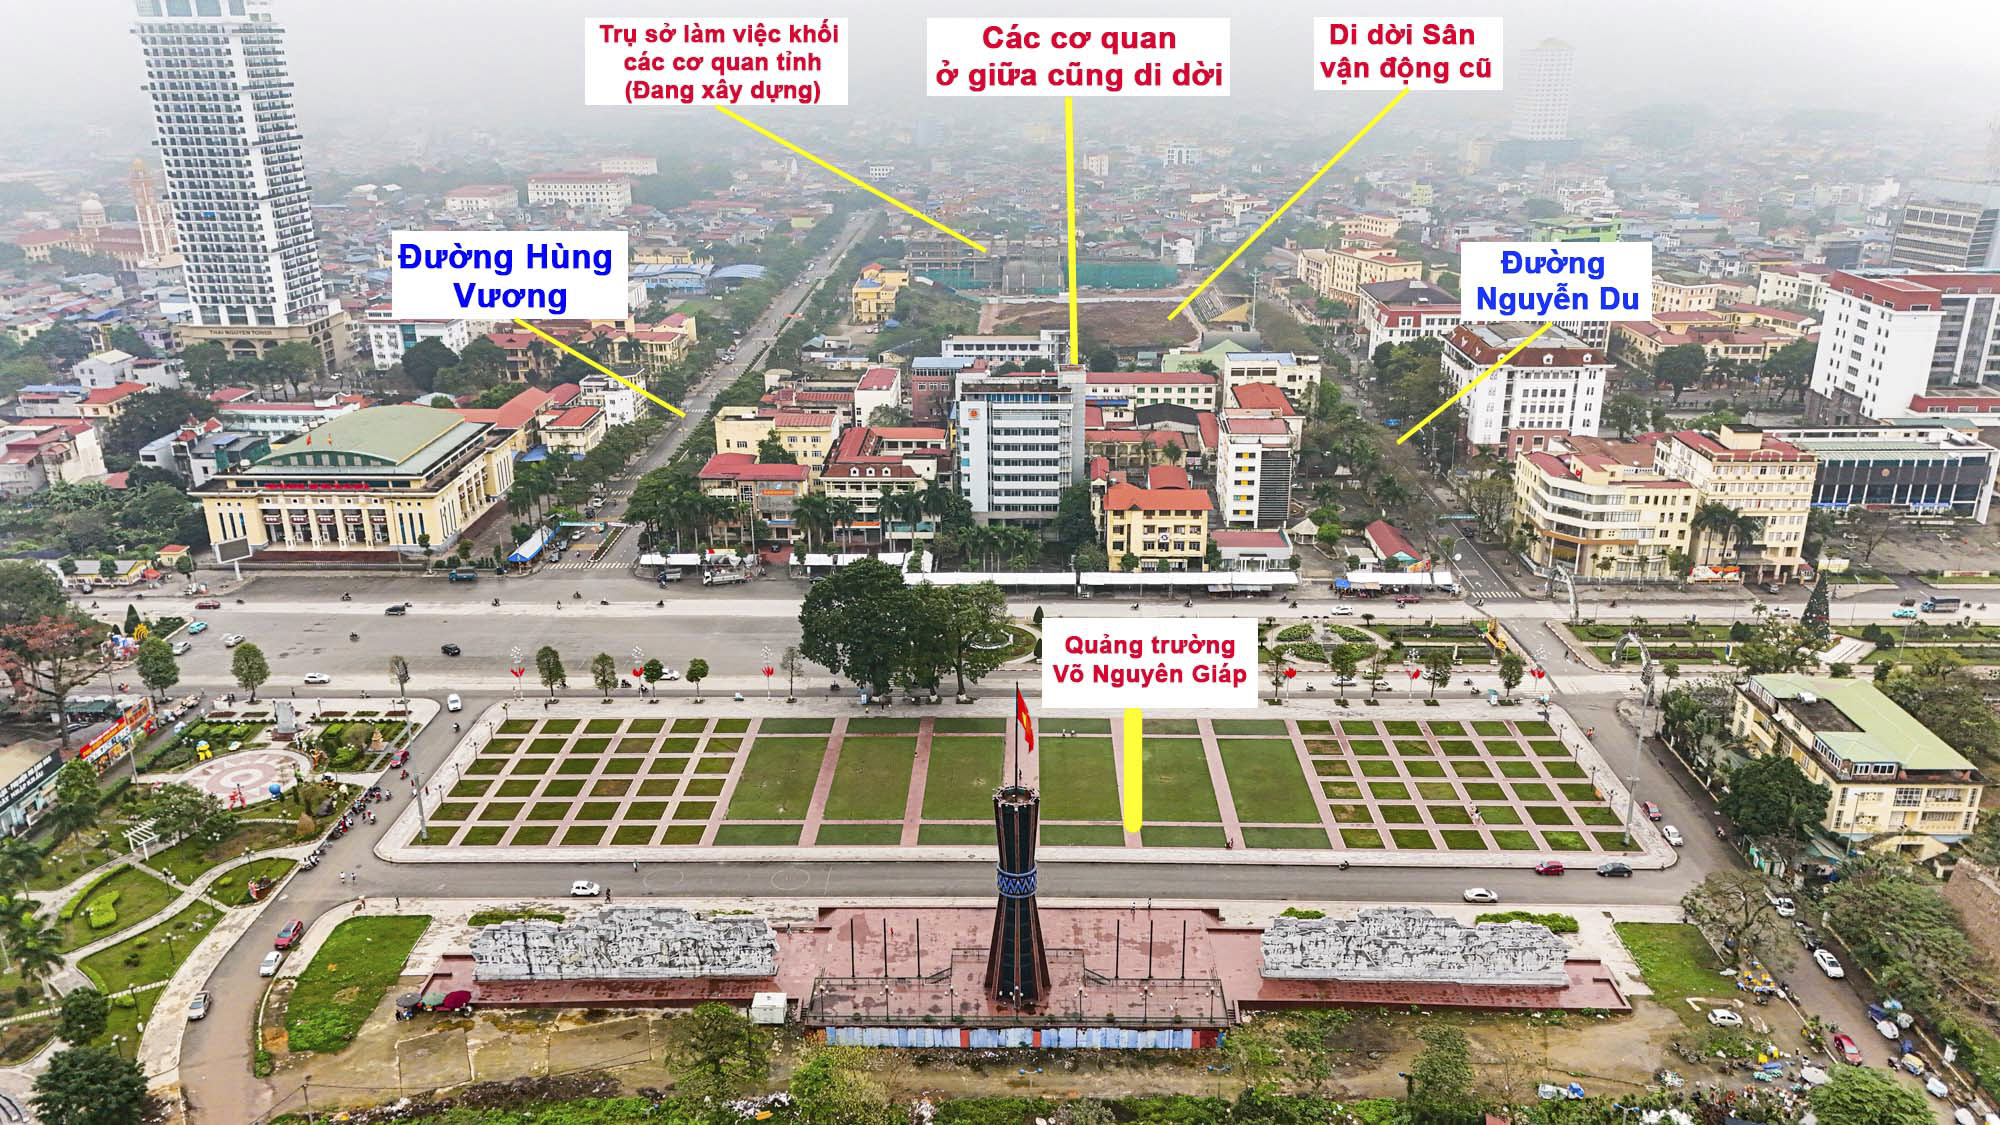 Khu vực sẽ là trung tâm mới của Thái Nguyên: Di dời sân vận động lớn nhất miền núi phía Bắc để xây trụ sở hành chính, phố đi bộ- Ảnh 10.